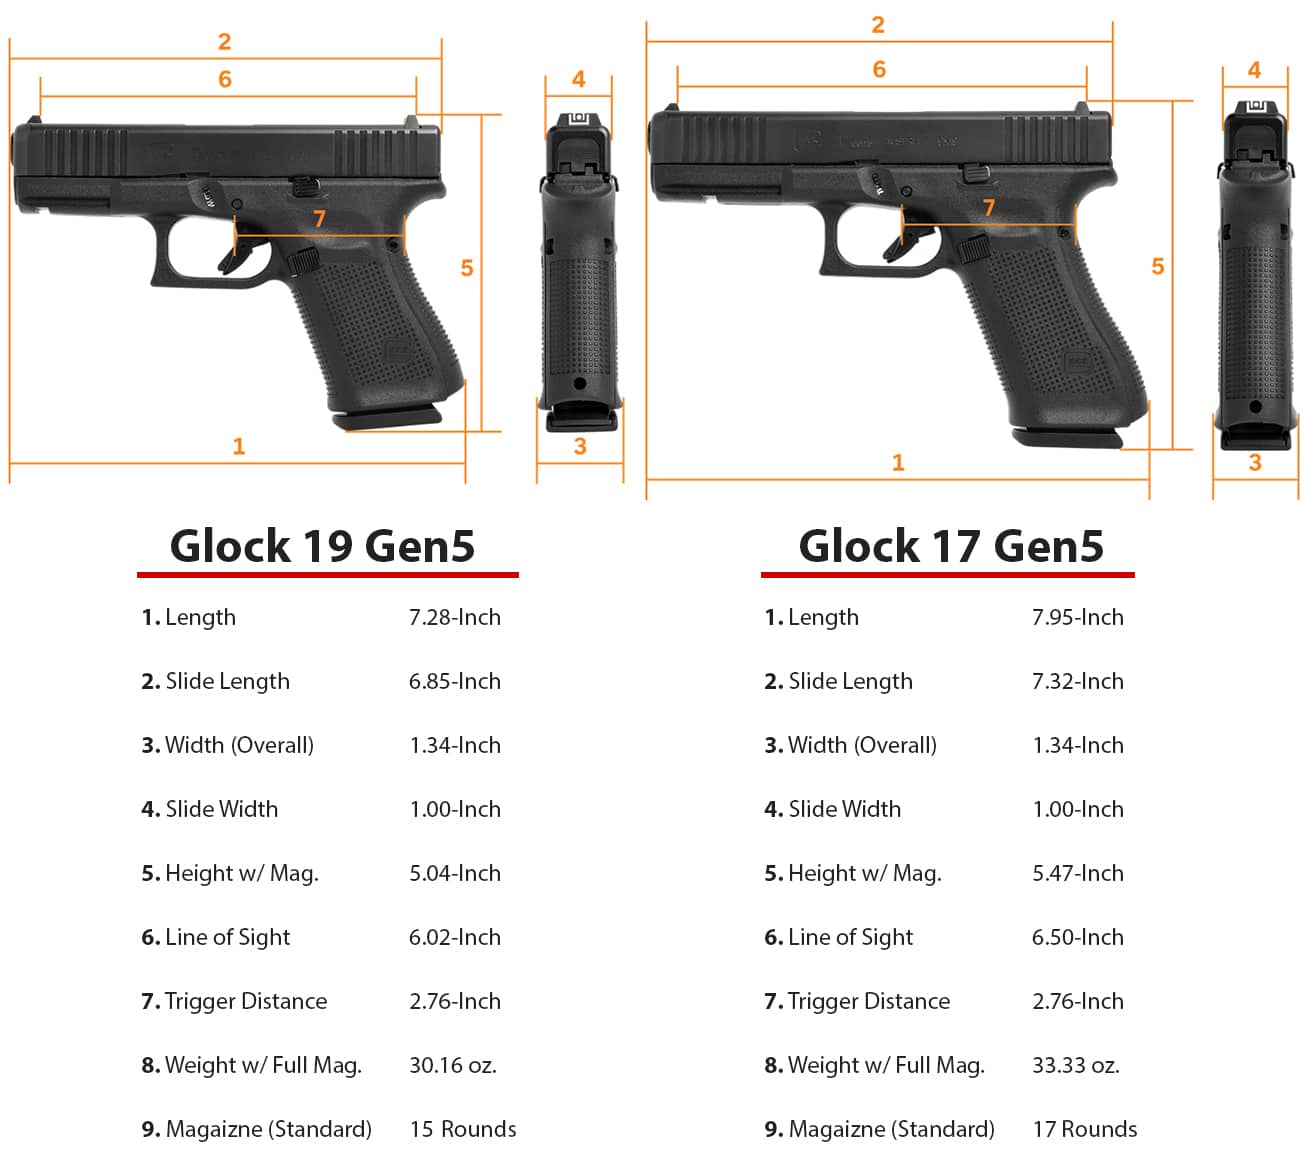 Glock 17 Gen-4 vs Gen-5